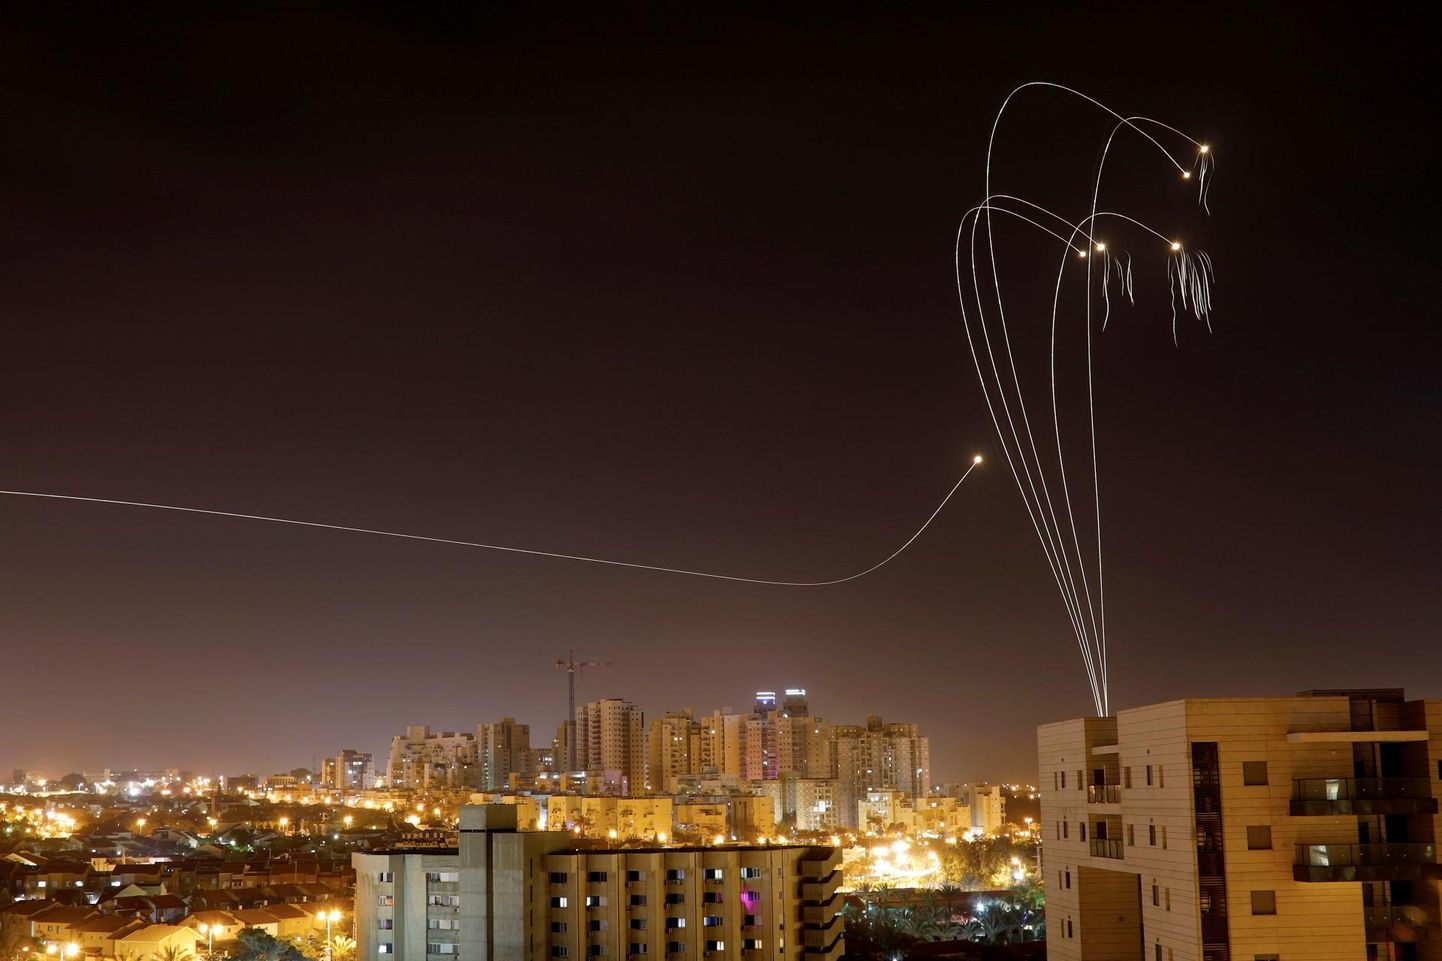 Gaza sektorist tulistati nädalavahetusel Iisraeli pihta ligi 700 raketti, millest osa suutis Iisraeli raketitõrjesüsteem peatada. 